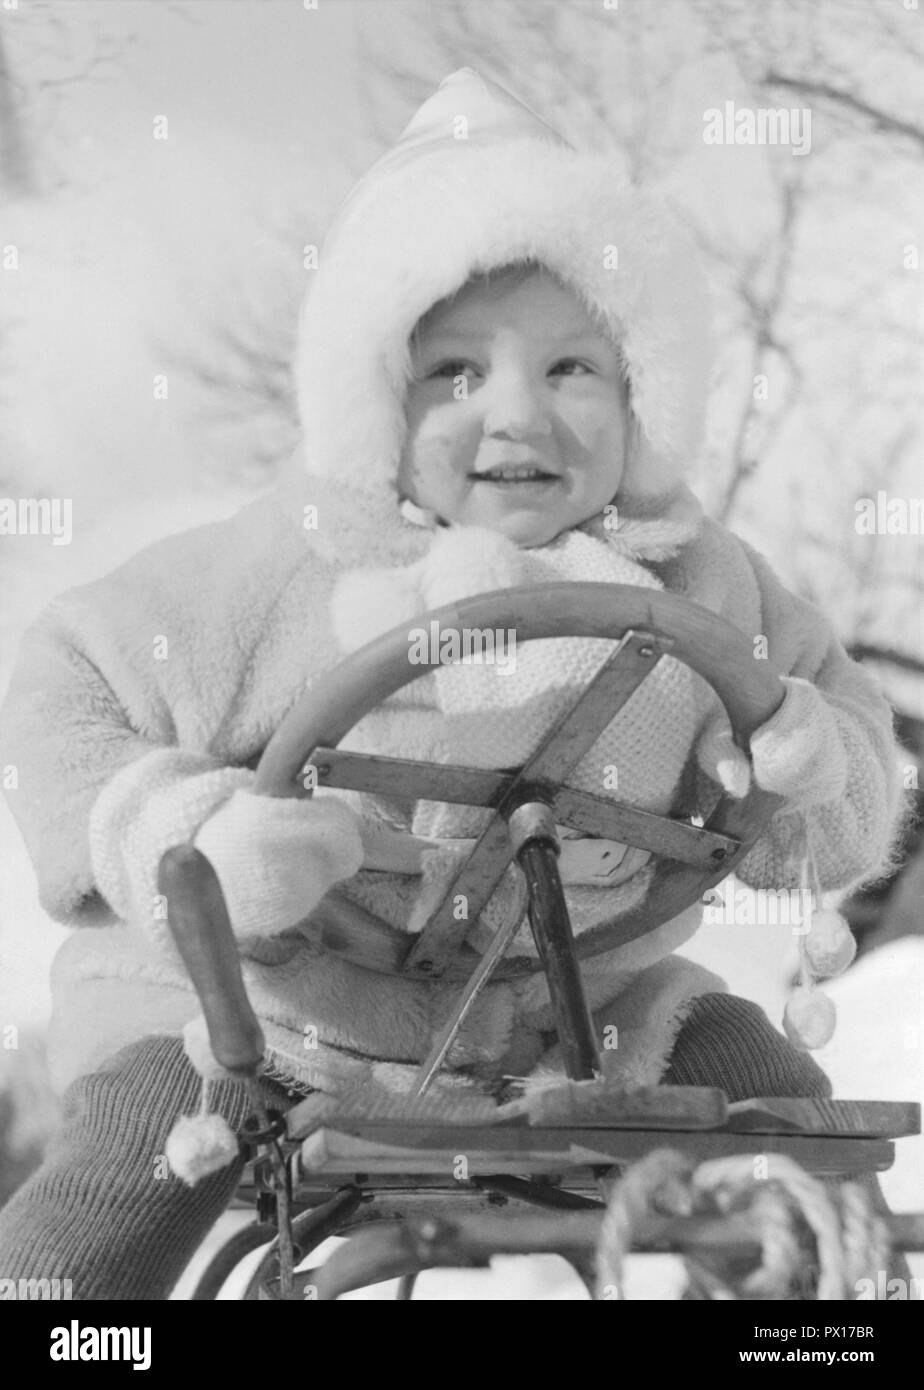 Niño niño niño con orejeras, guantes de nieve jugando alegremente